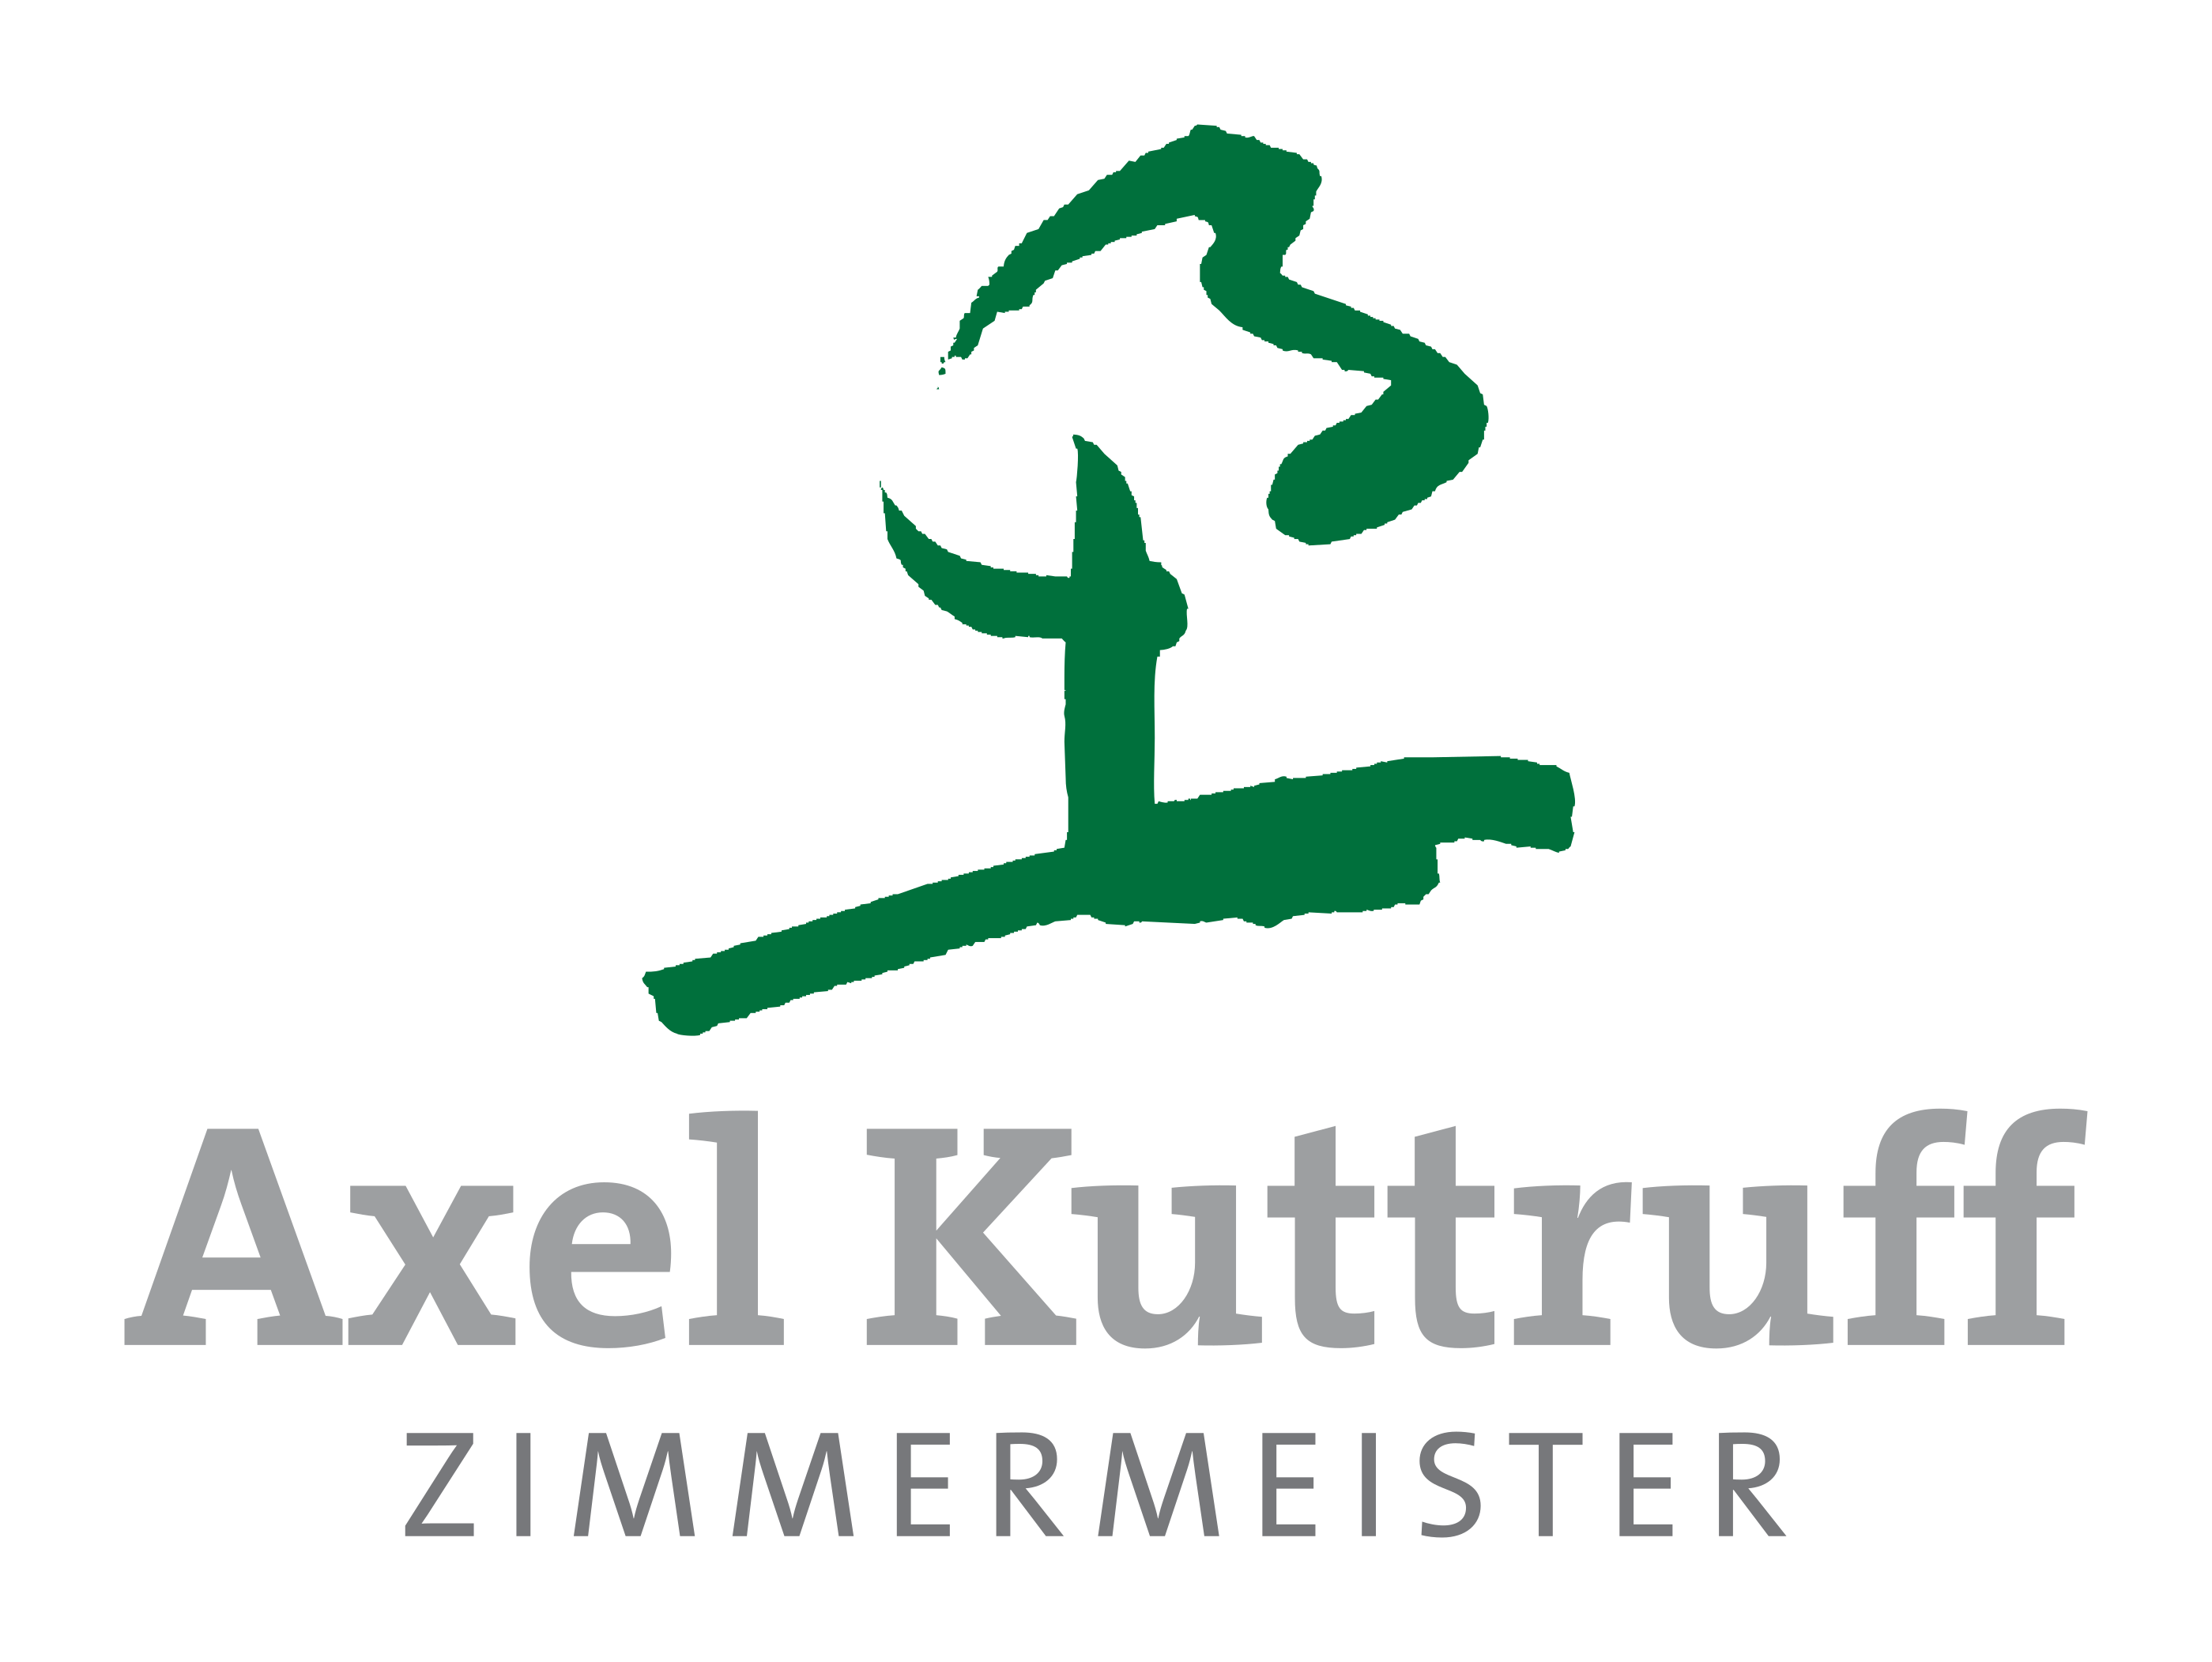 Axel Kuttruff